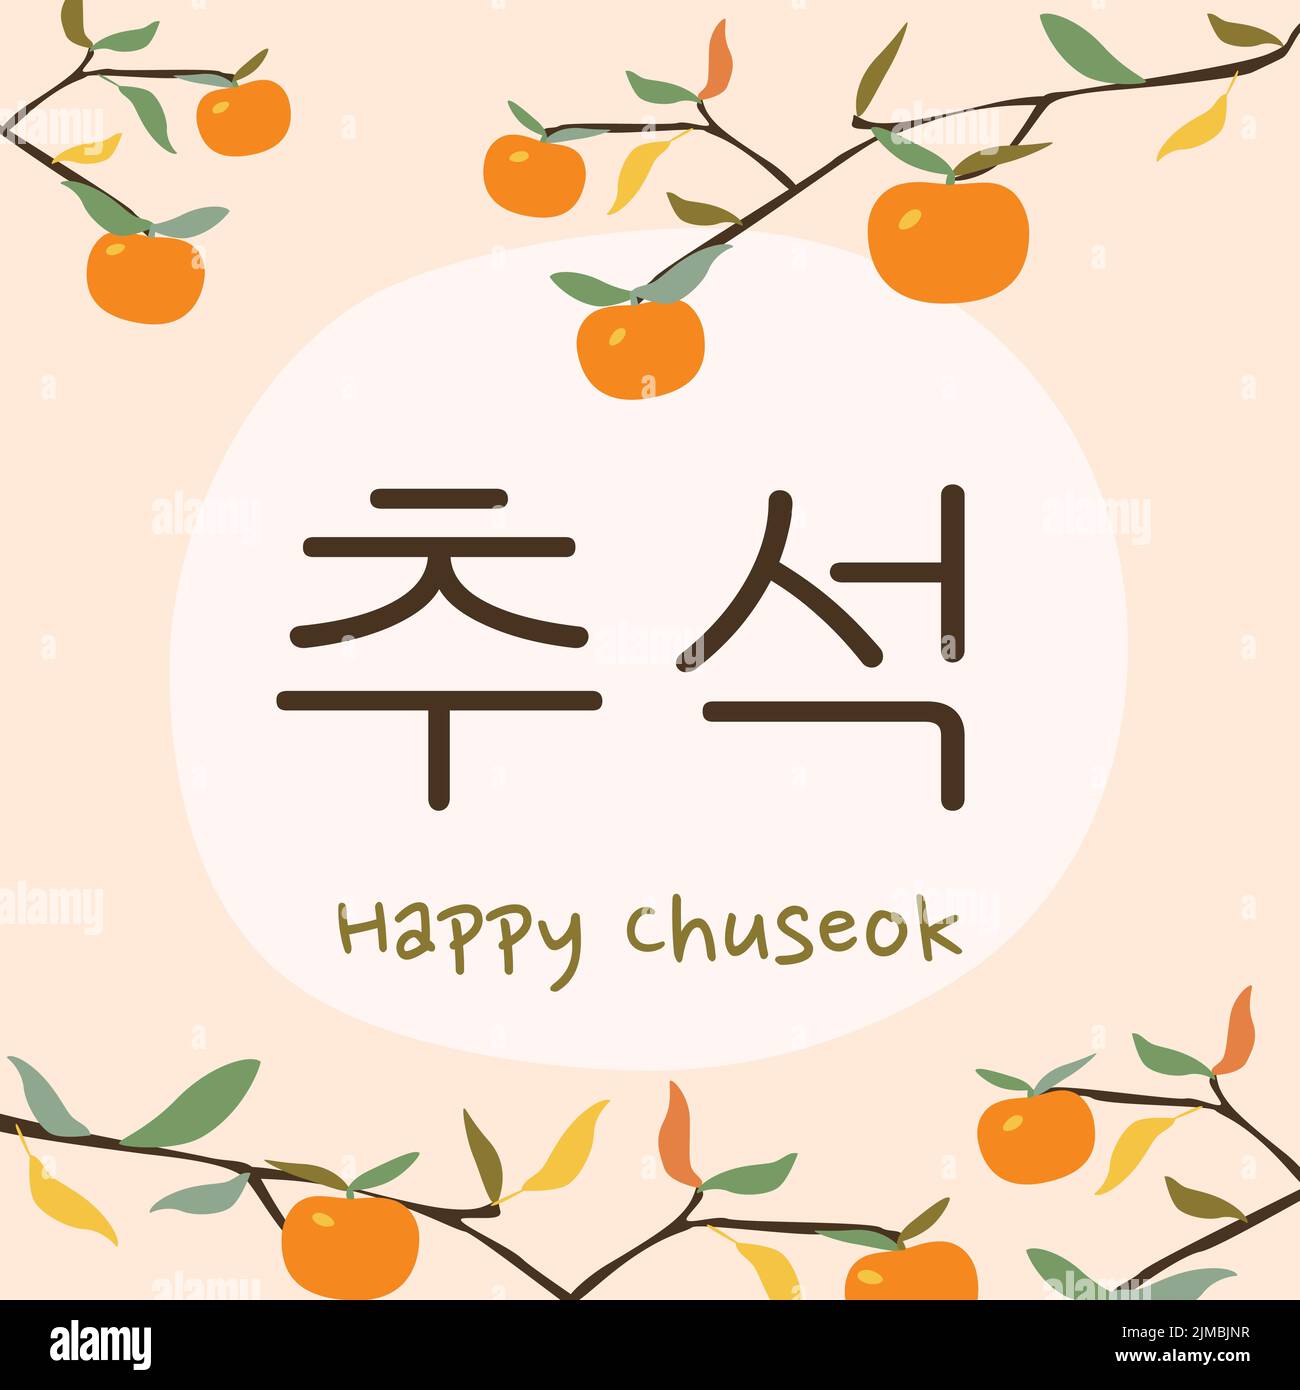 Festa tradizionale coreana Chuseok giorno del Ringraziamento. Biglietto di auguri Chuseok felice. Didascalia coreana. Moderno banner quadrato con frutta di persimmone sul ramo. Illustrazione Vettoriale